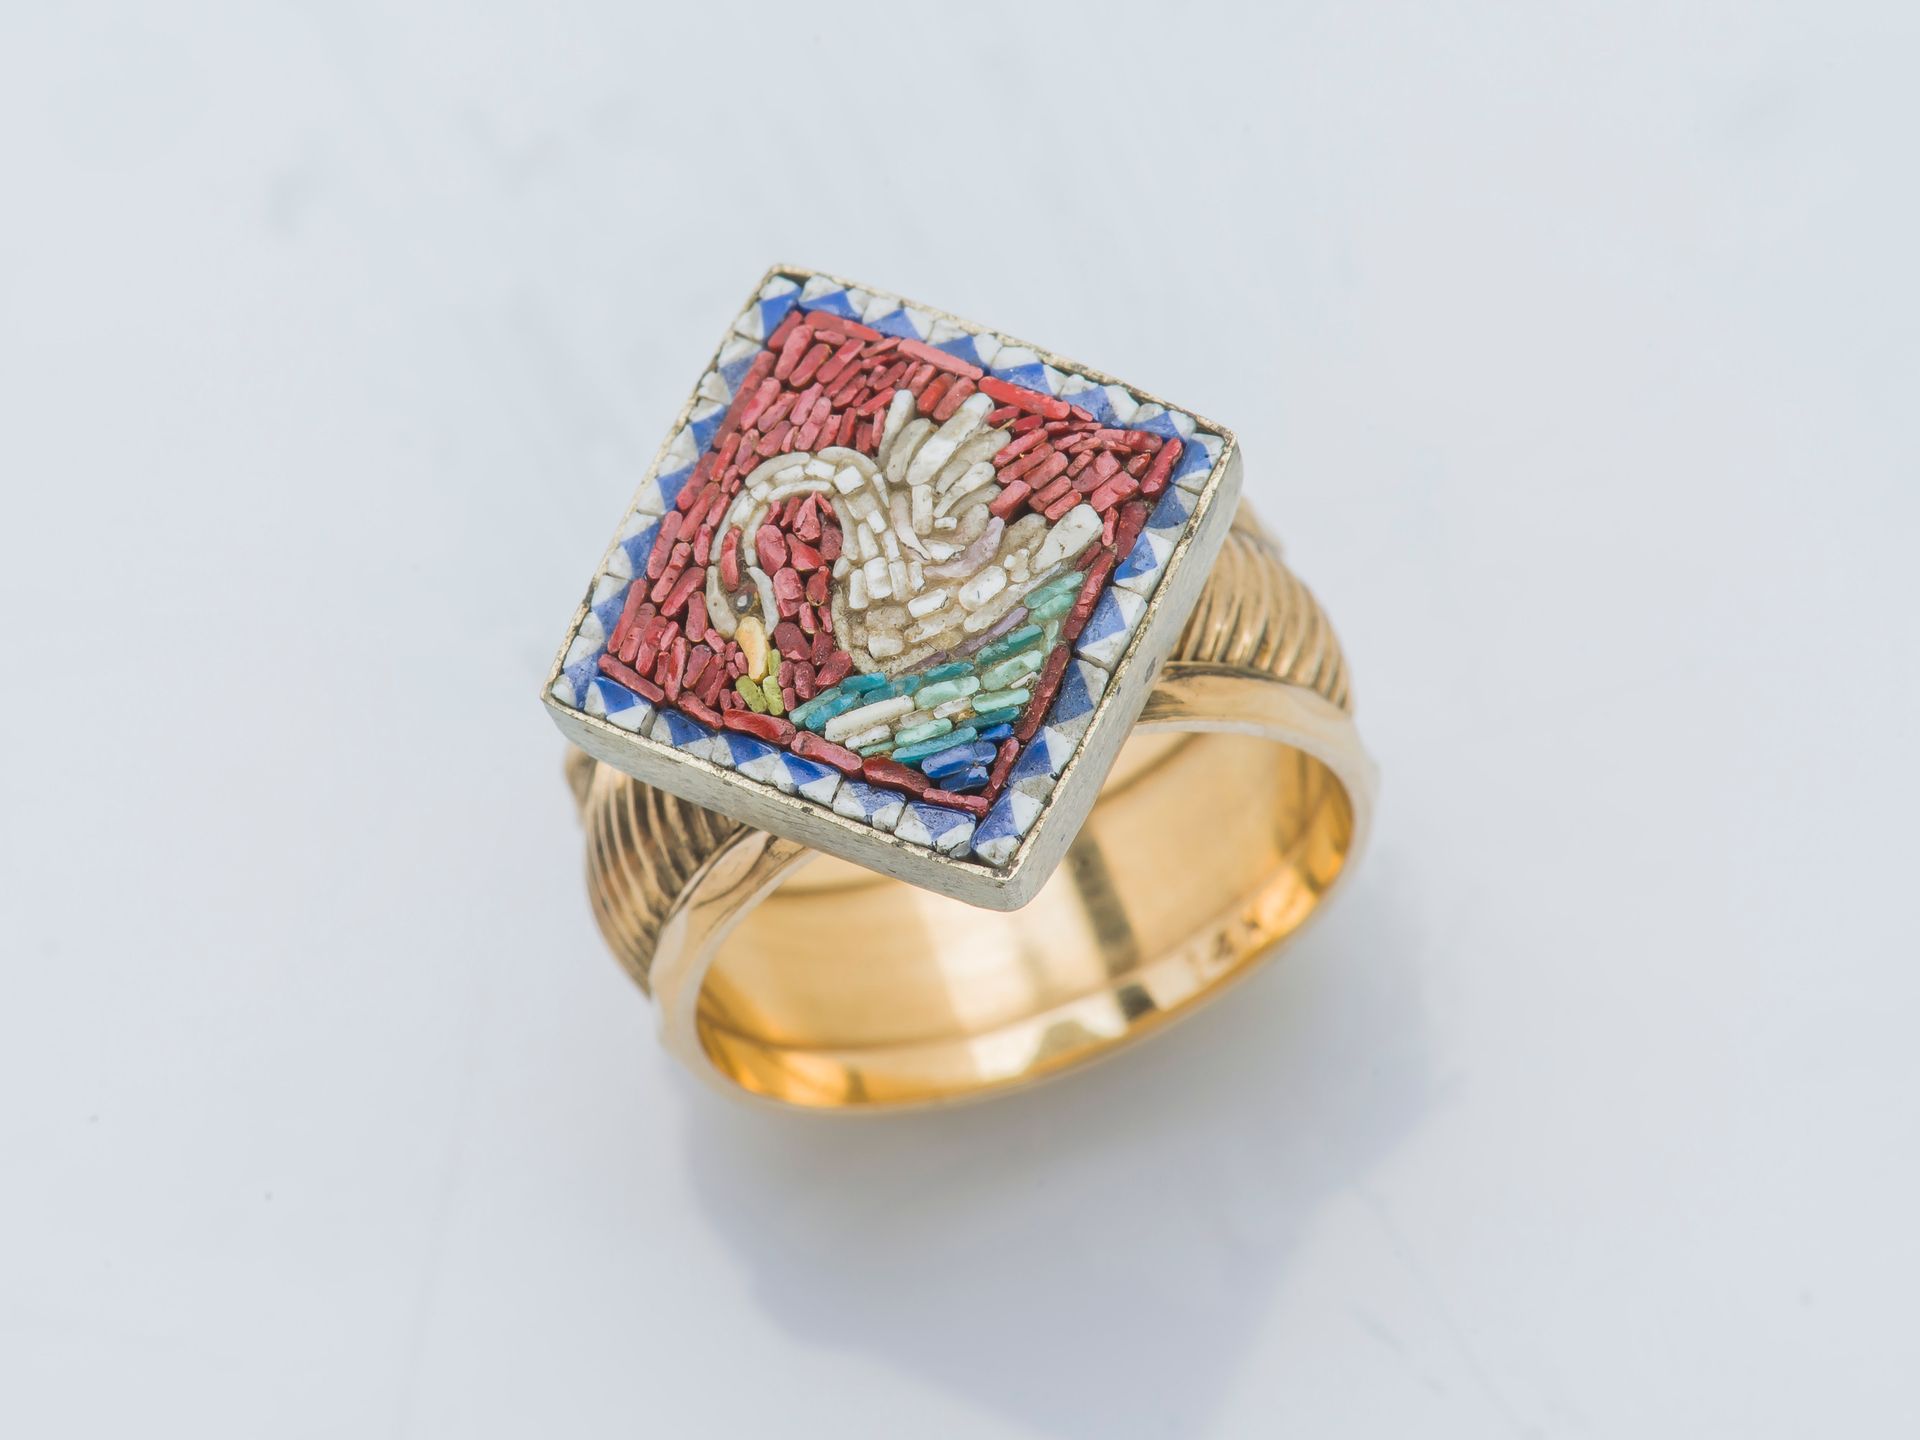 Null 18K（750‰）黄金和金属戒指，镶嵌有钻石形的微马赛克，以红底天鹅为主题。

手指大小：52 总重量：7克